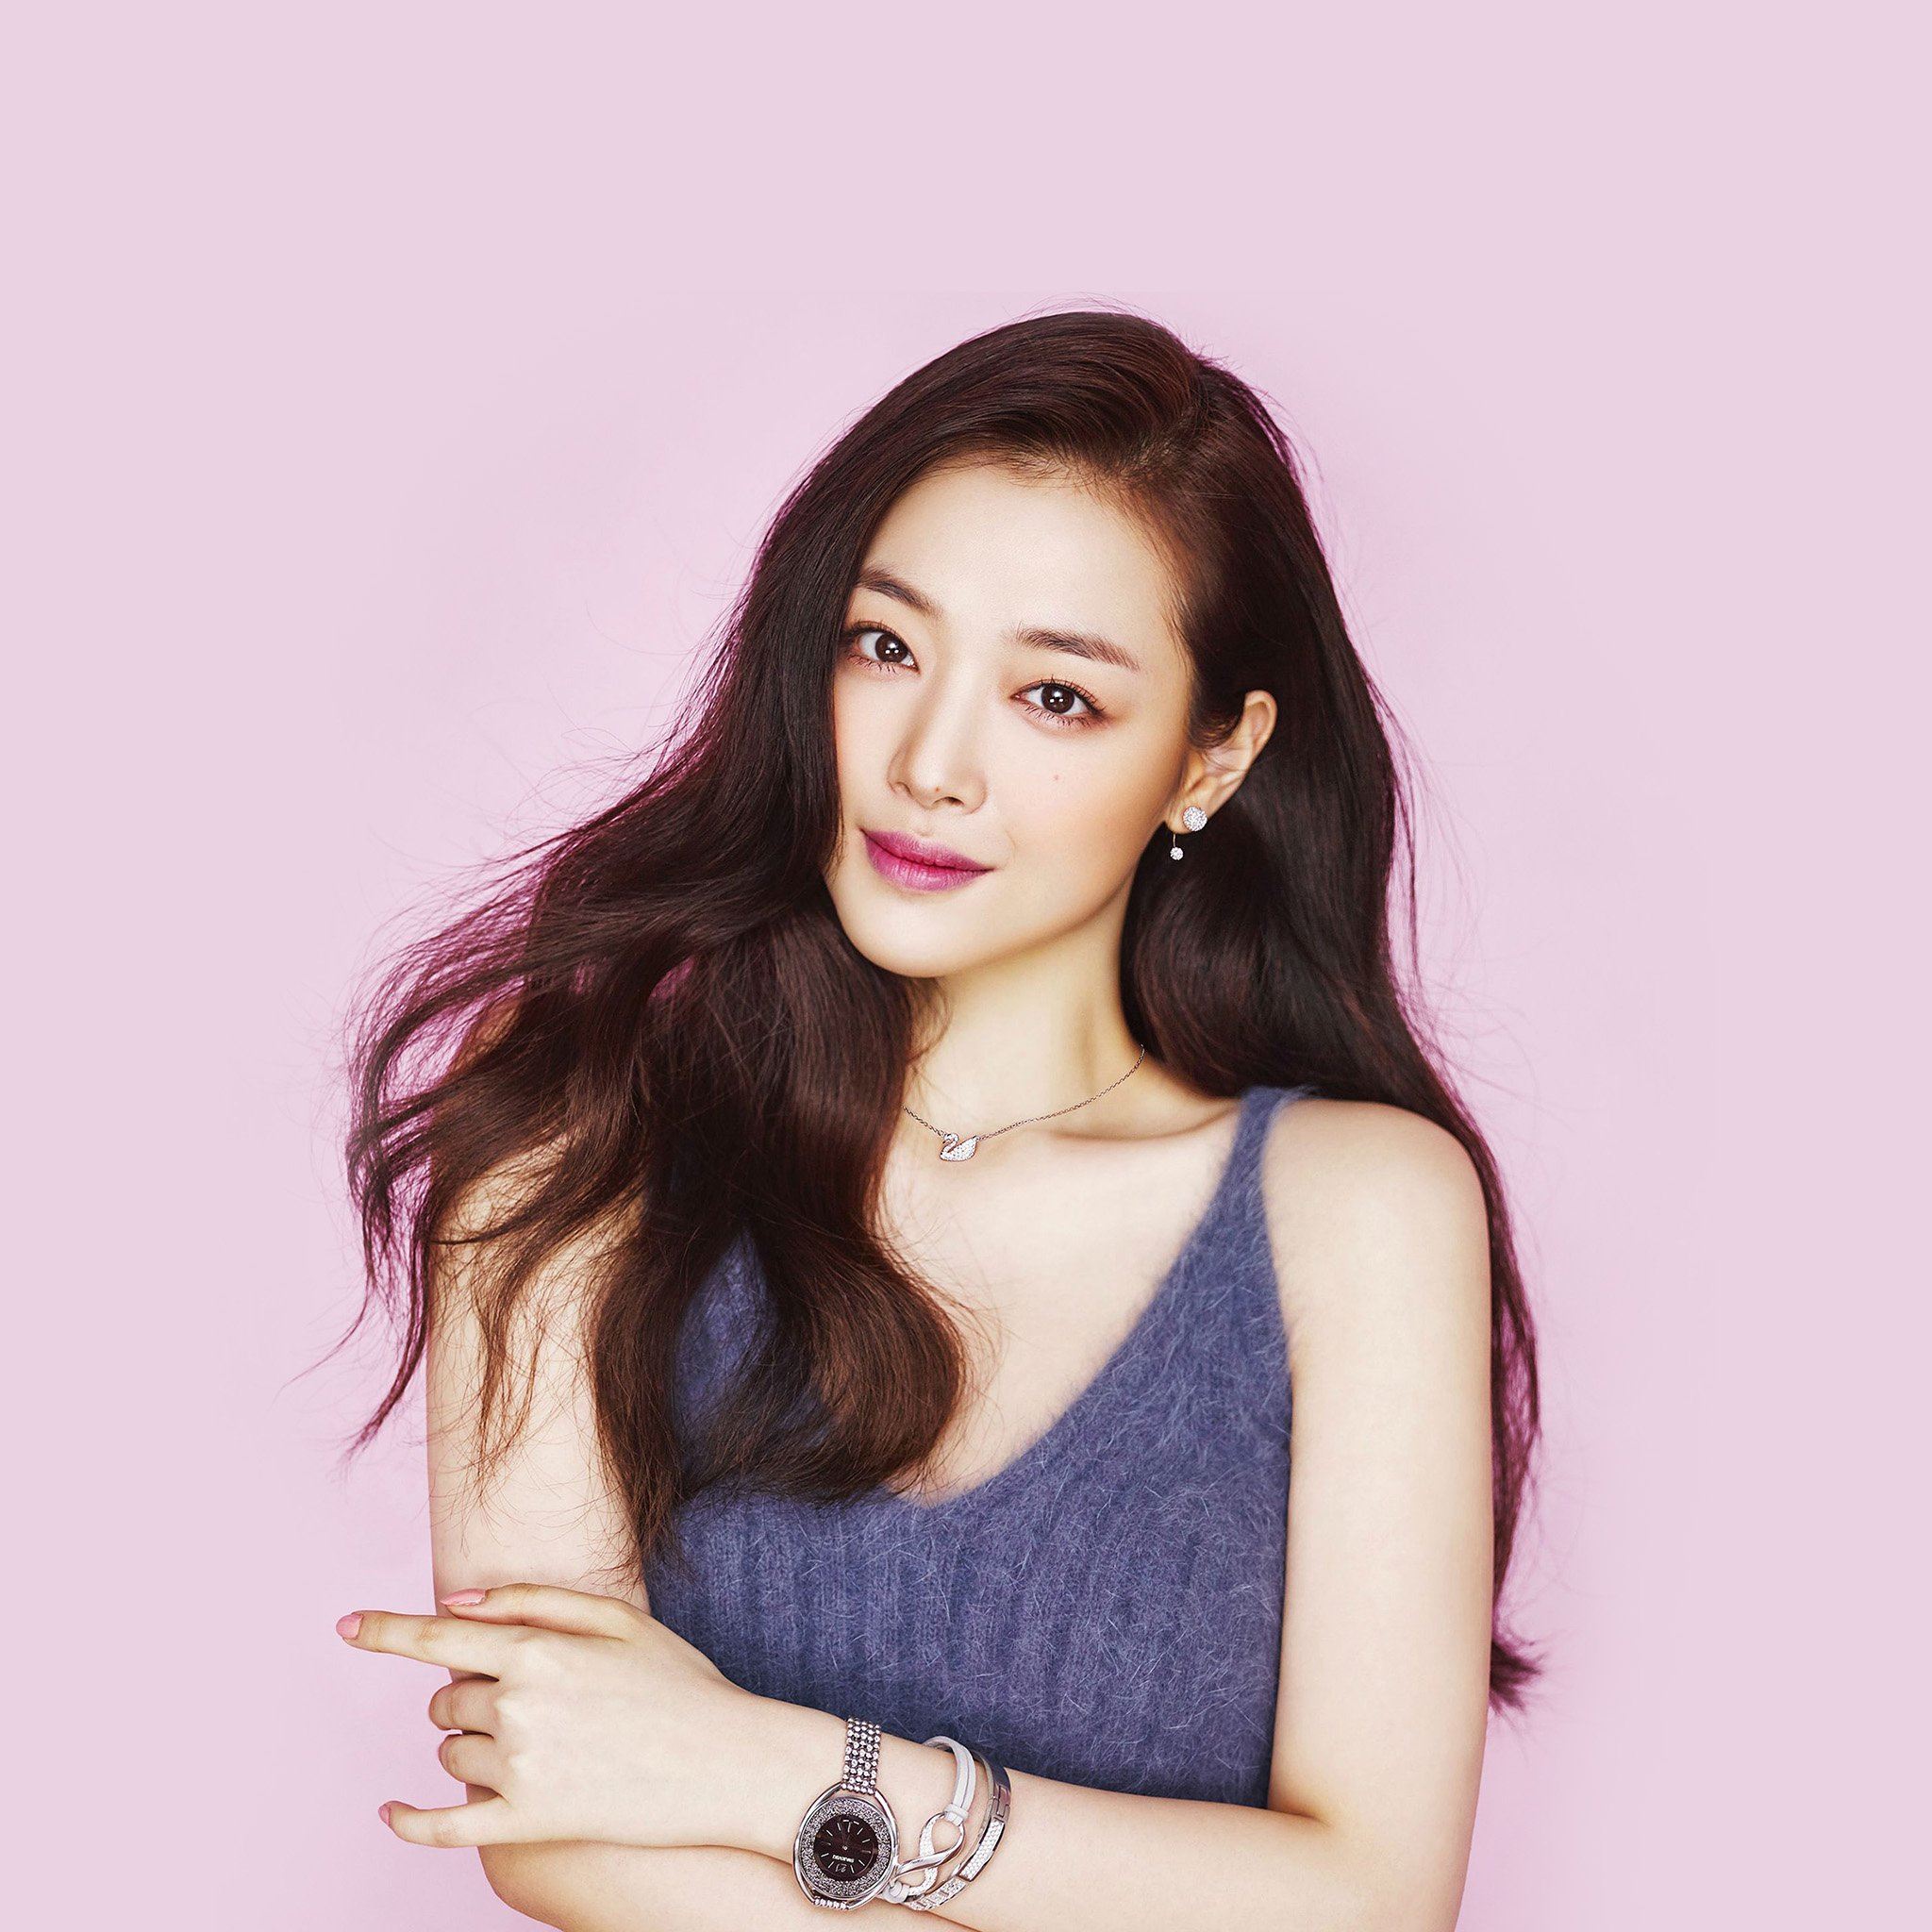 Sulli Kpop Pink Cute Girl Asian iPad Air wallpaper 